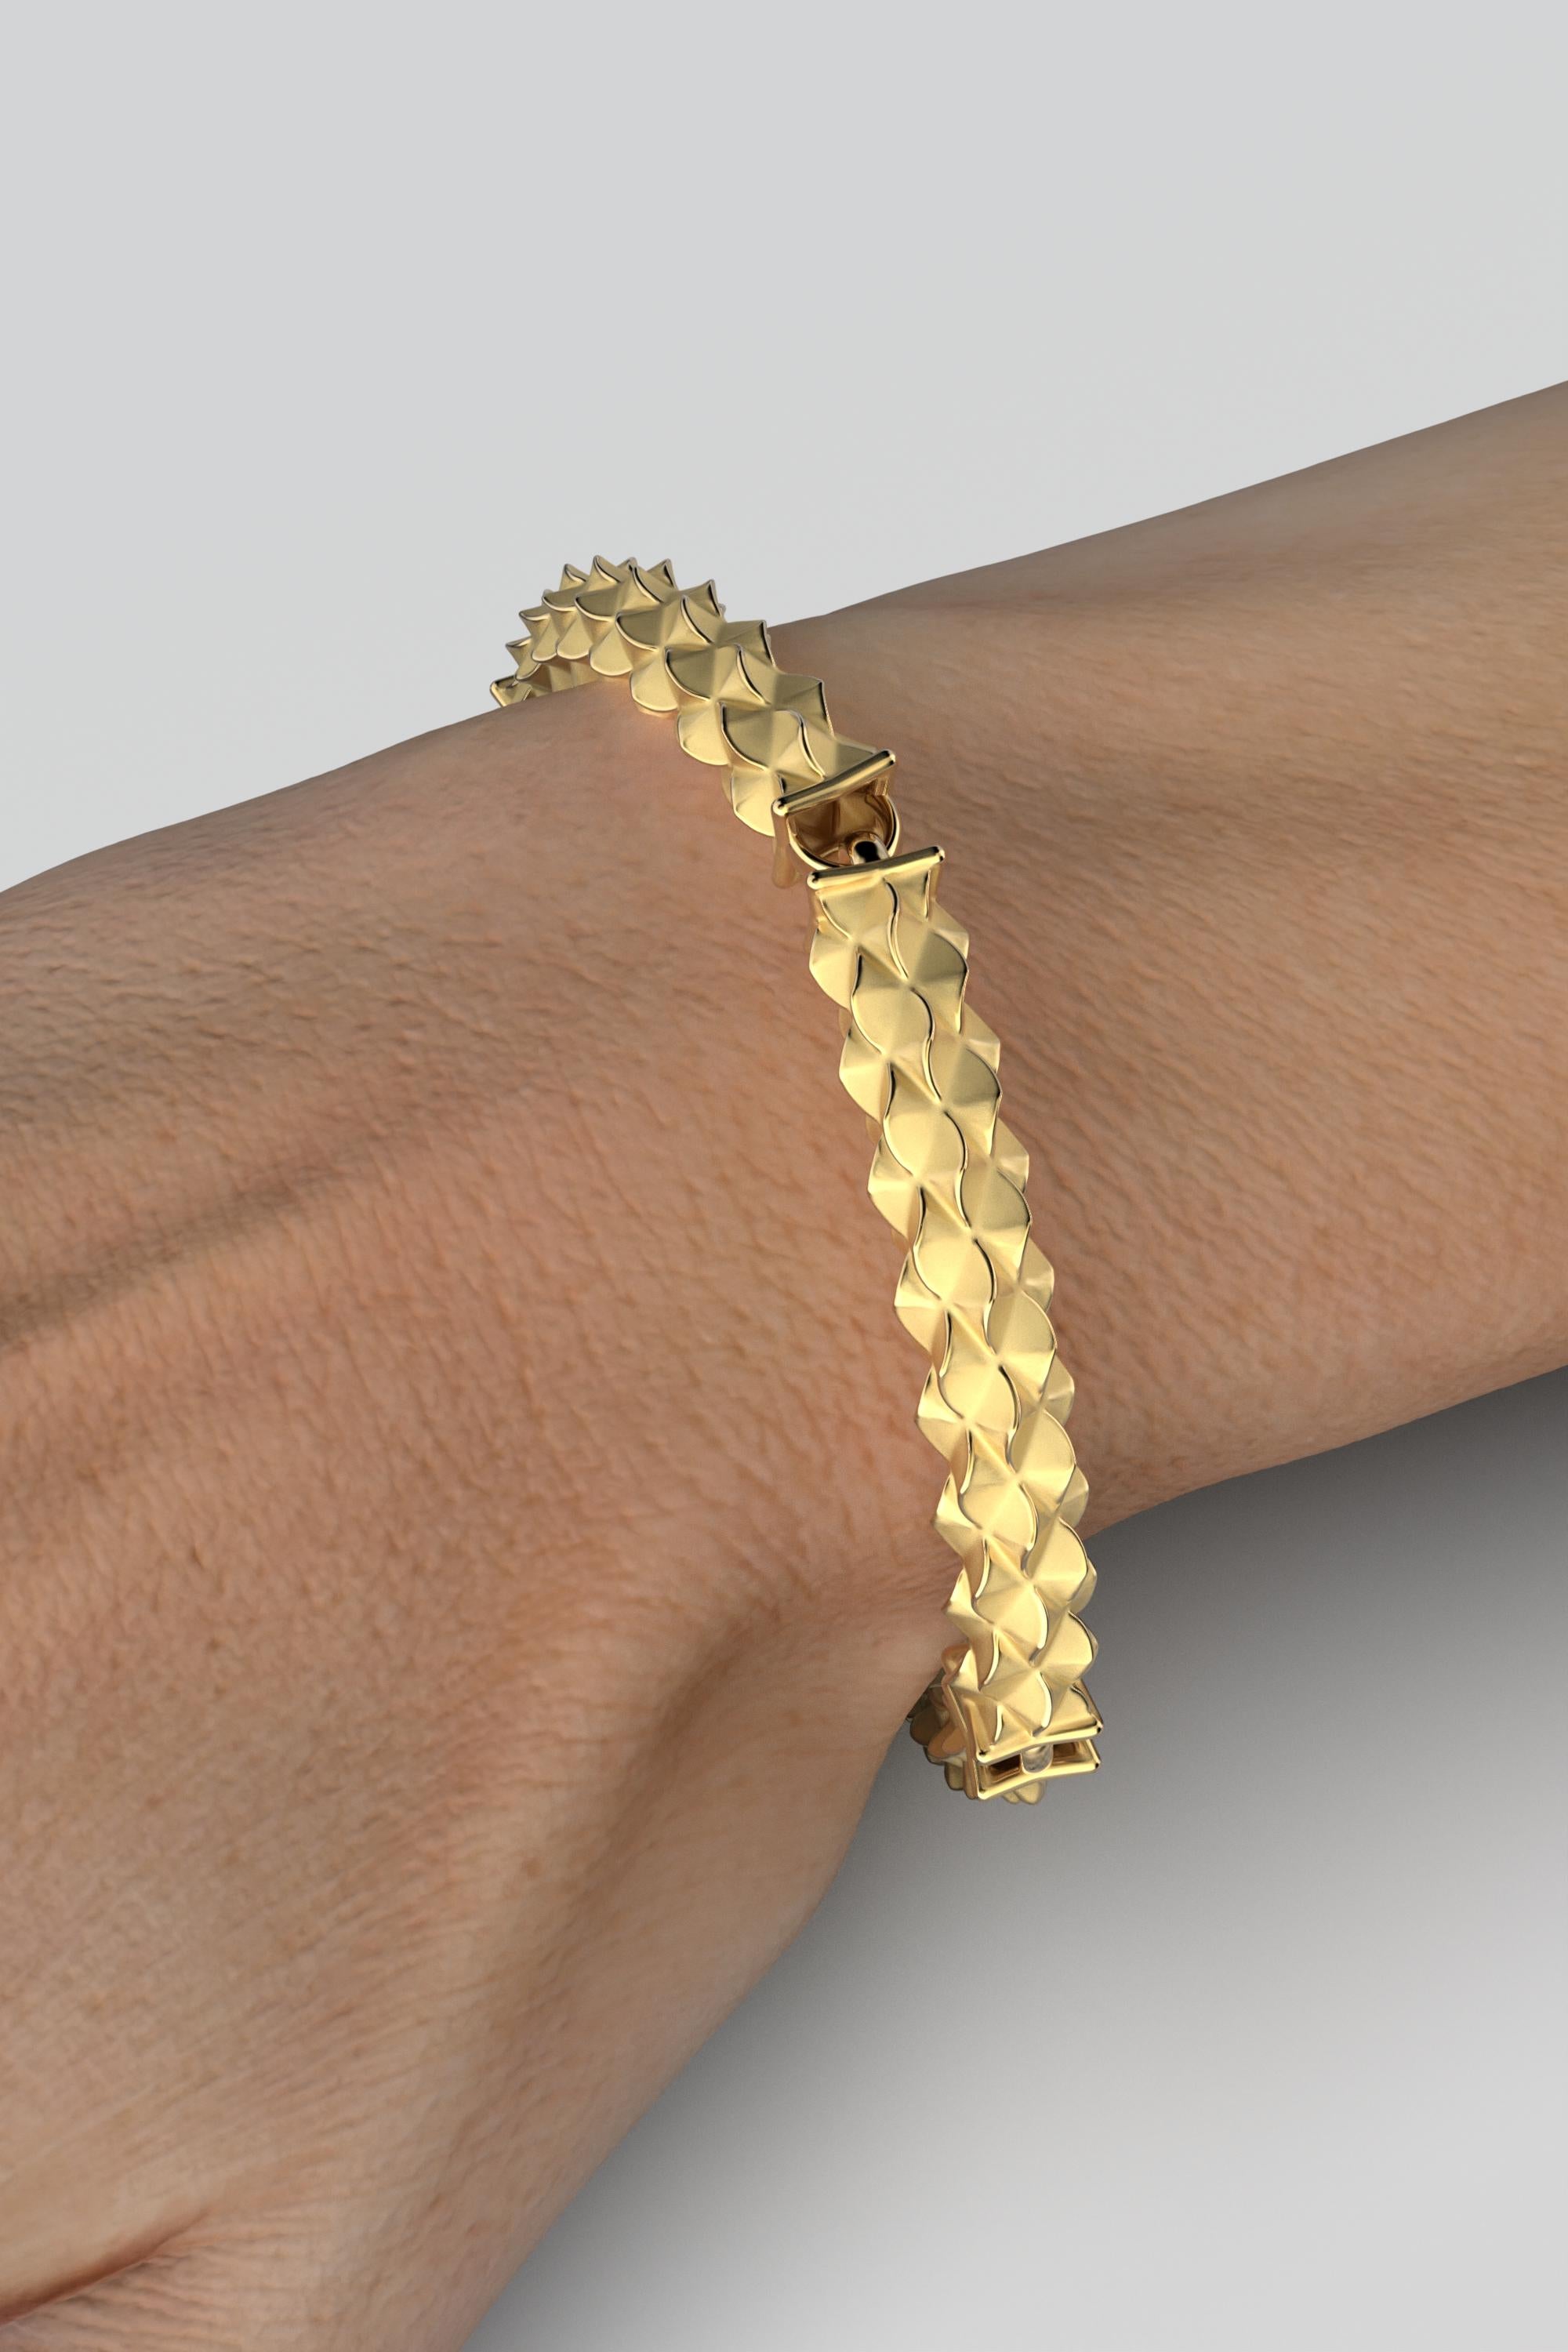 14k Italian Gold Link Bracelet: Custom Semi-Rigid Design by Oltremare Gioielli In New Condition For Sale In Camisano Vicentino, VI